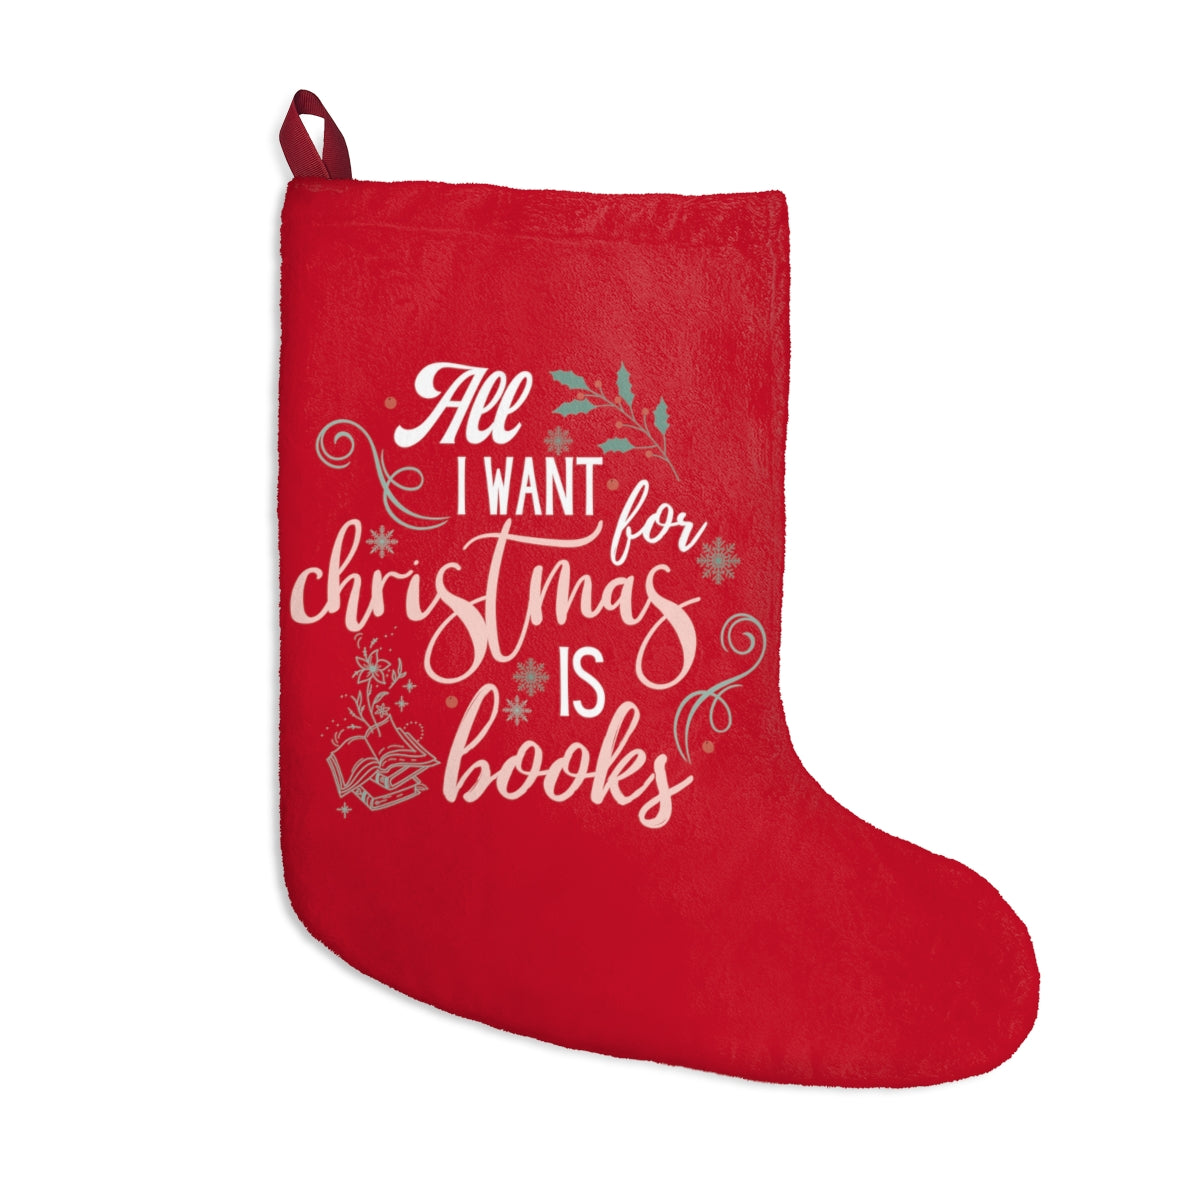 Bookish Christmas Stockings